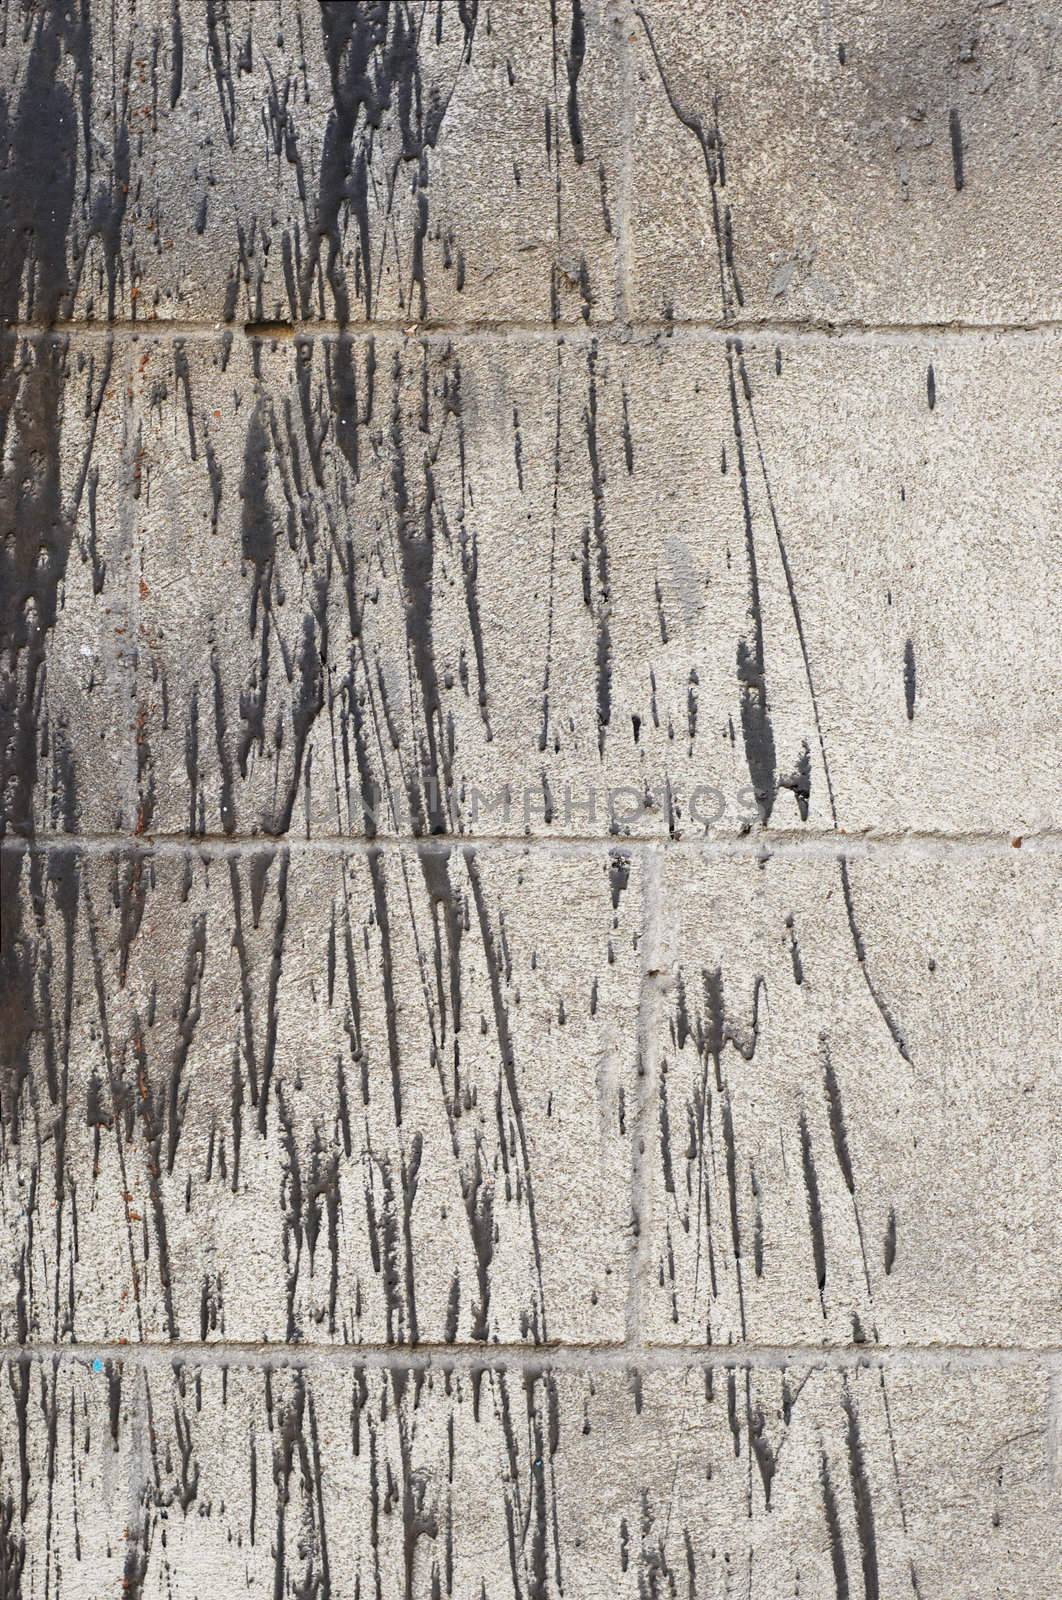 grunge background: bitumen splashes on concrete brick wall